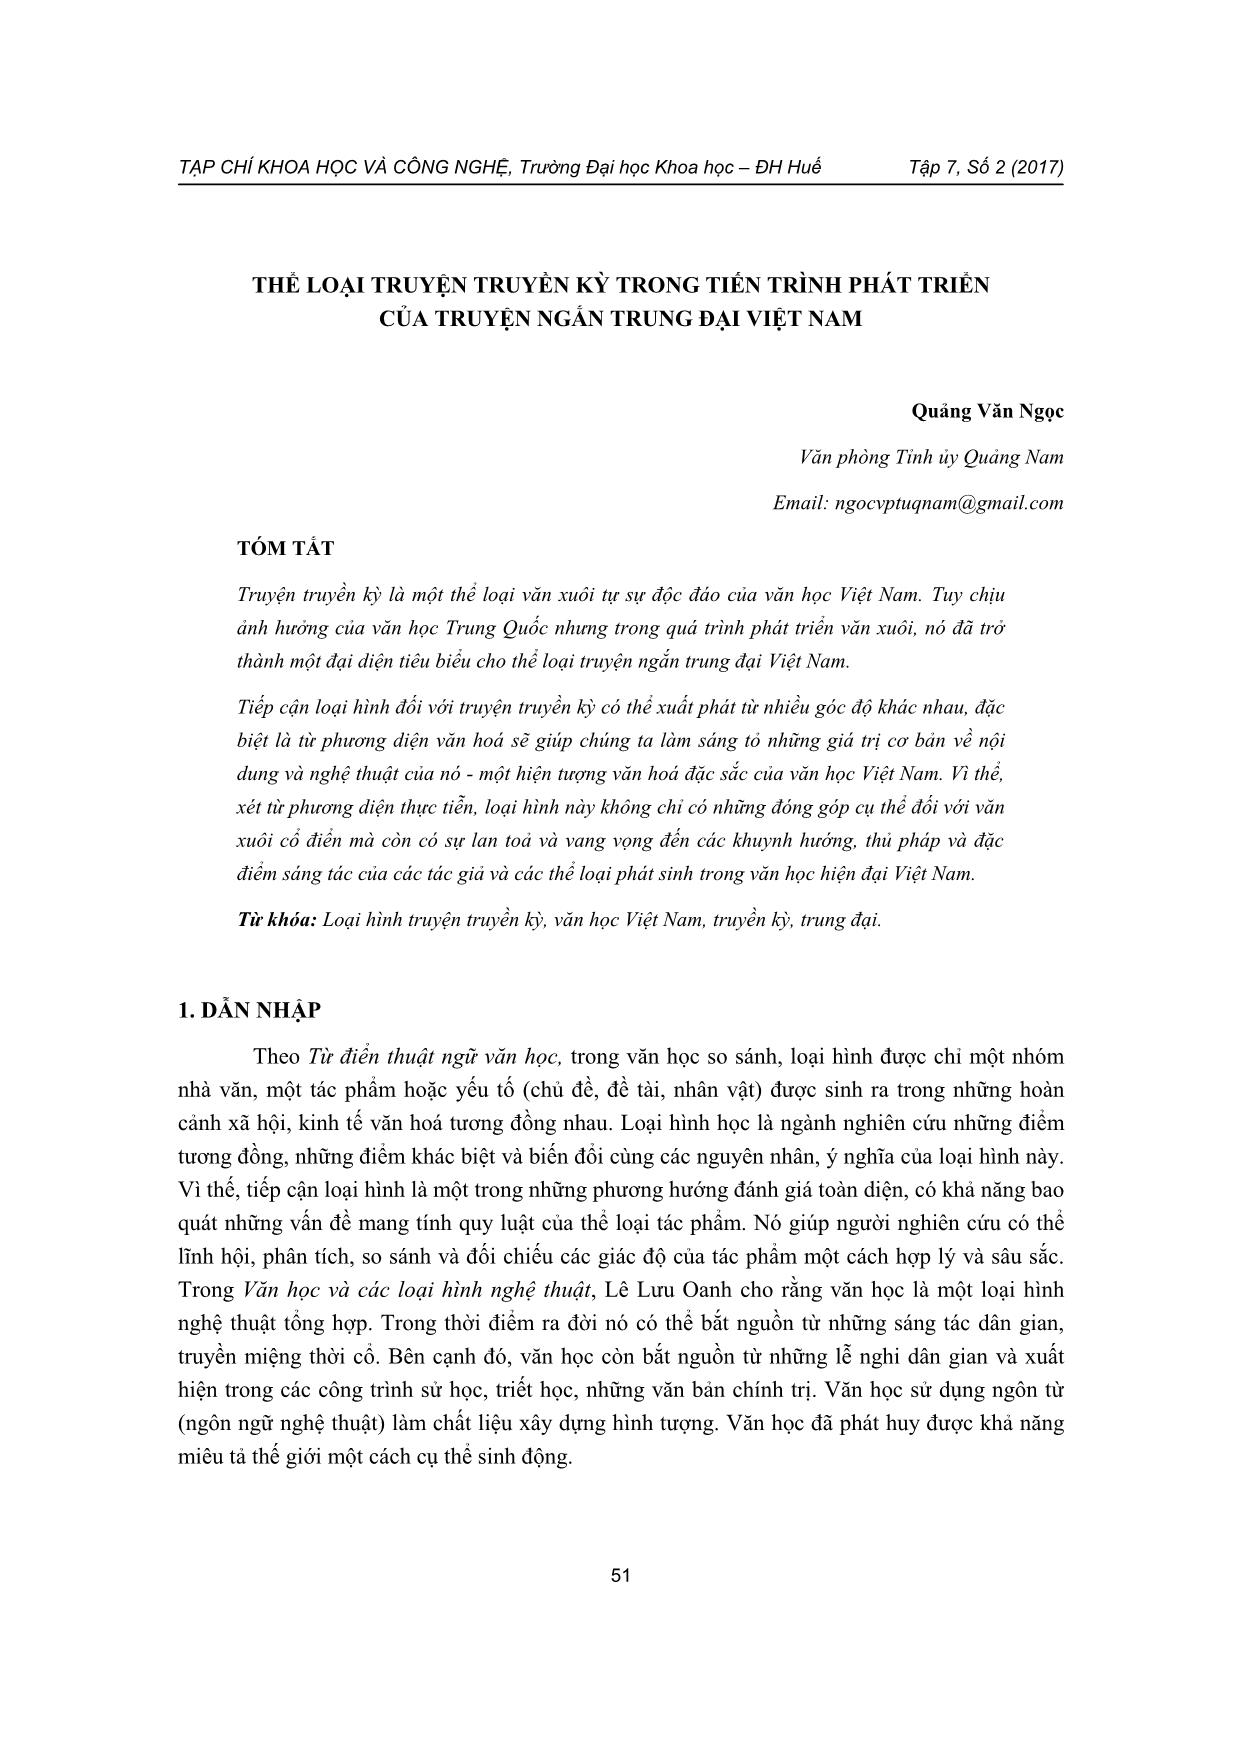 Thể loại truyện truyền kỳ trong tiến trình phát triển của truyện ngắn trung đại Việt Nam trang 1